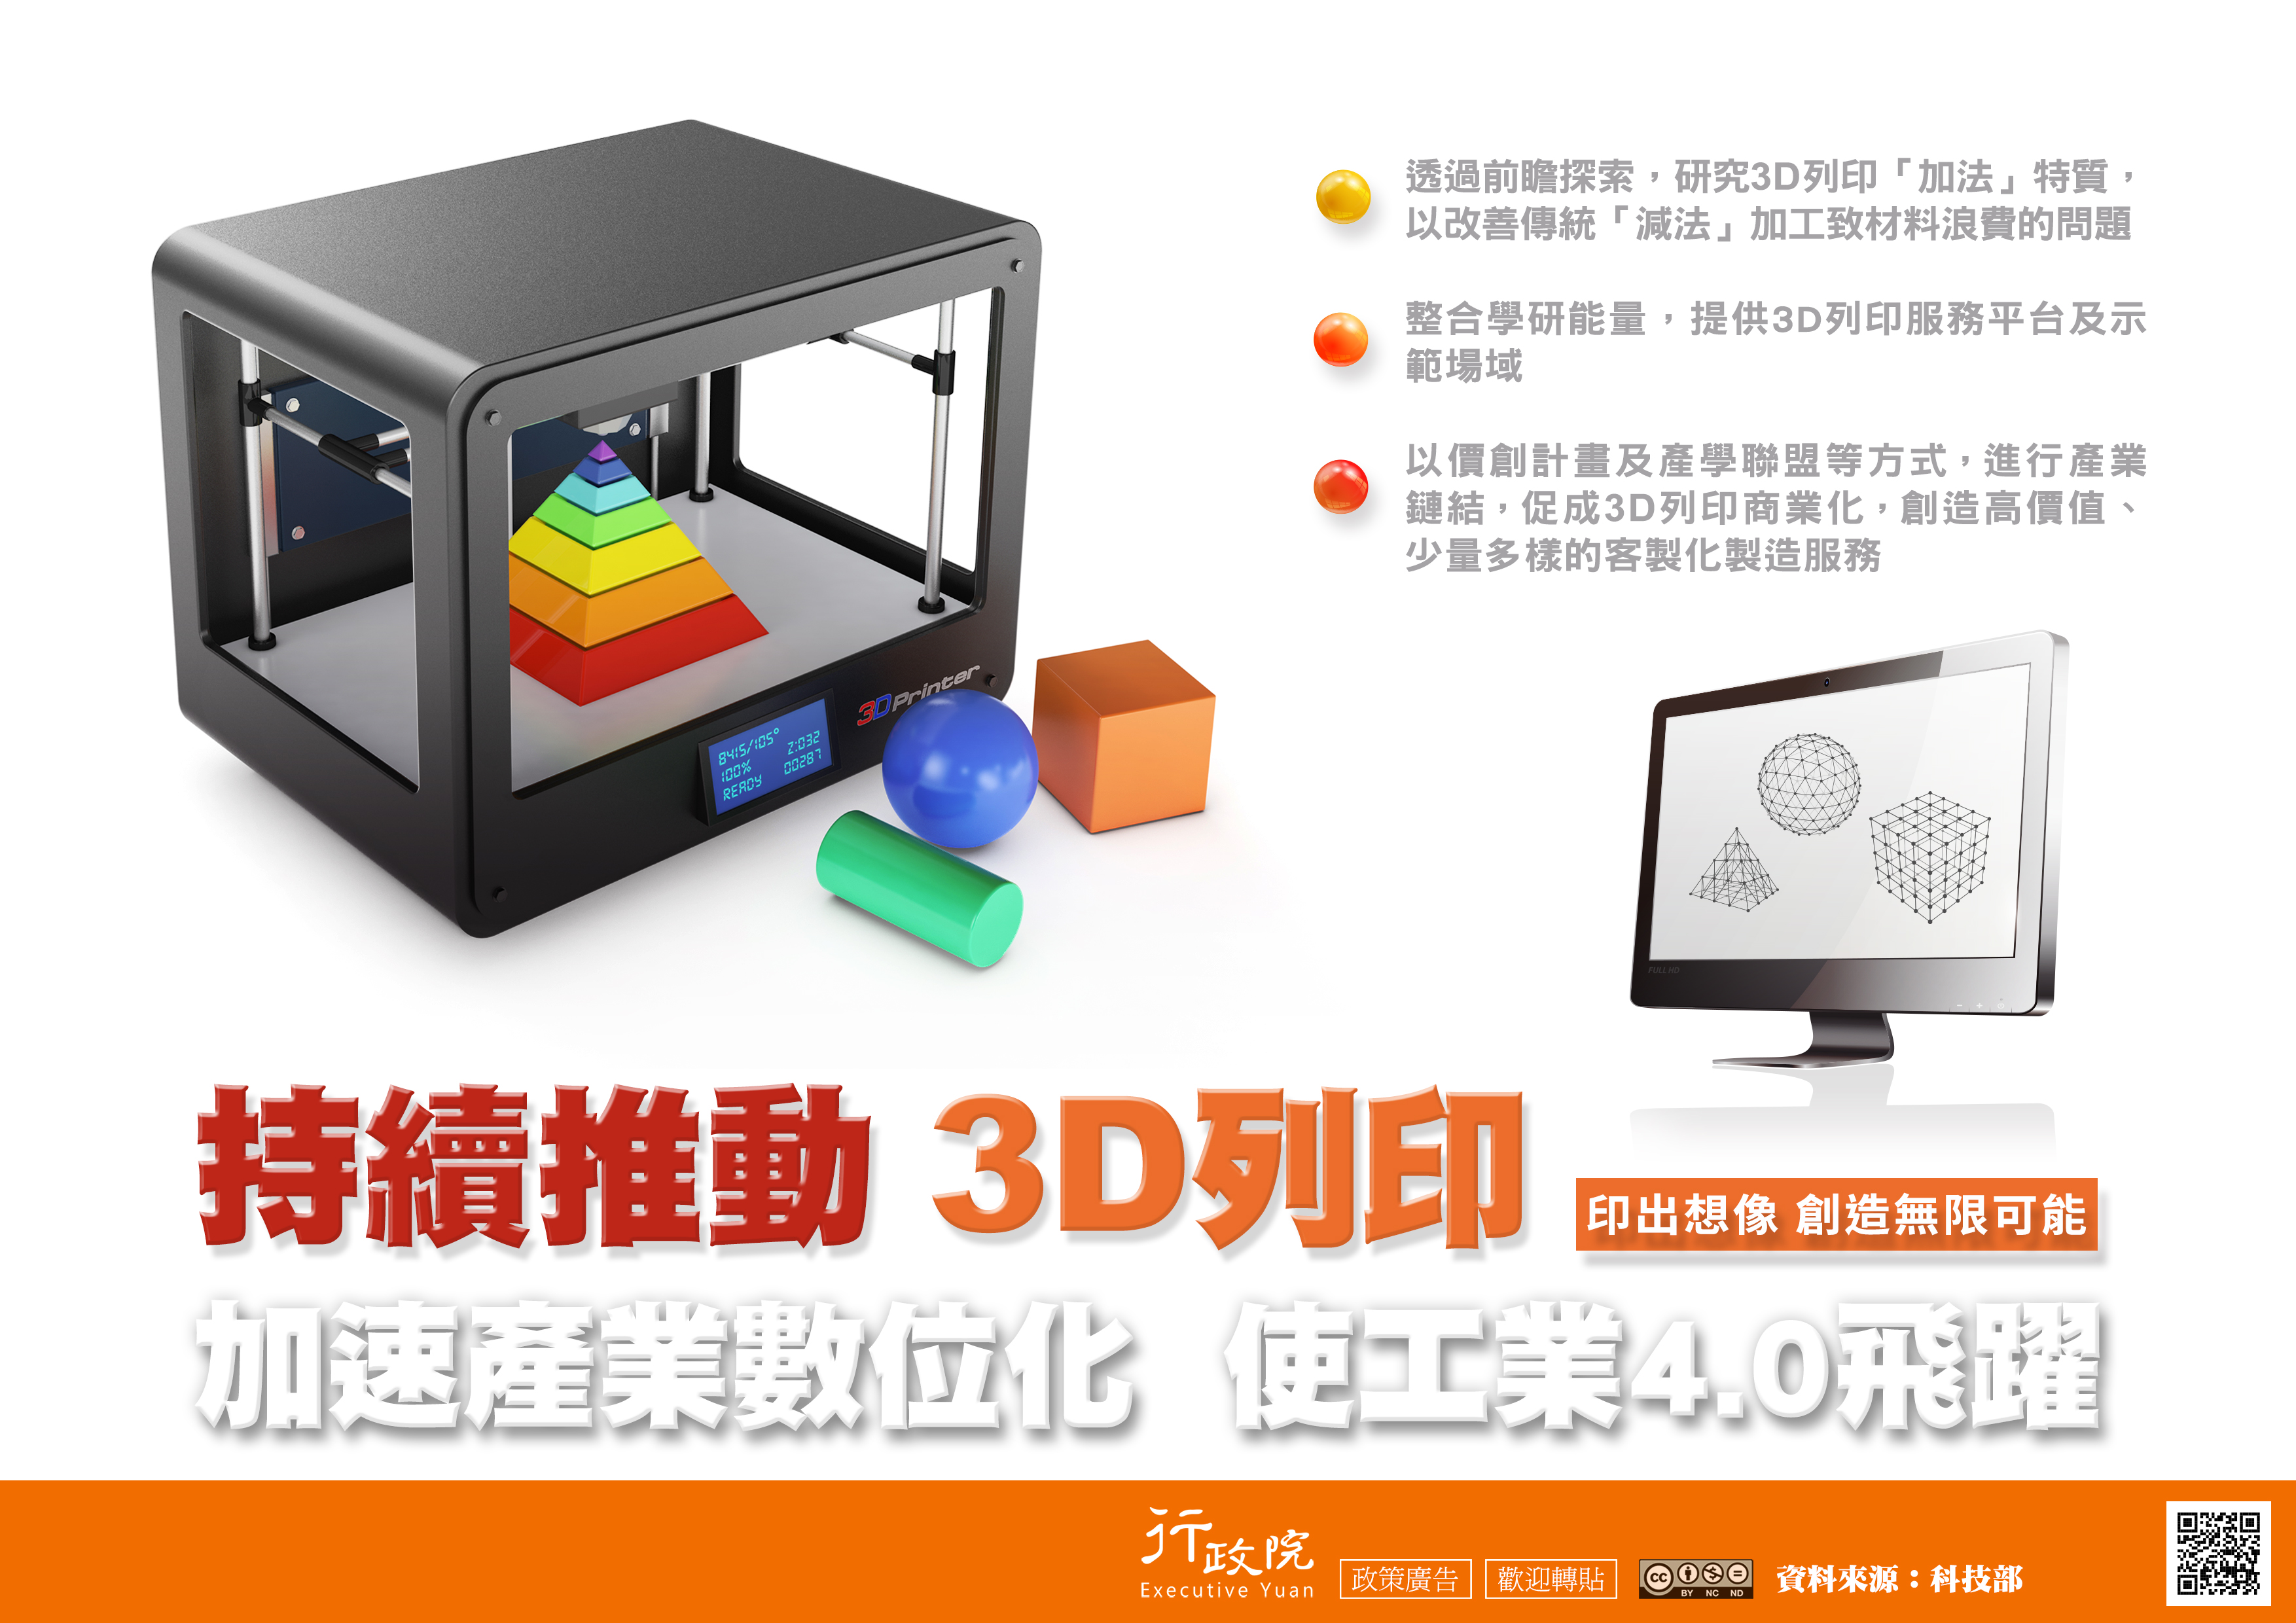 「持續推動3D列印」政策溝通電子單張文宣.JPG